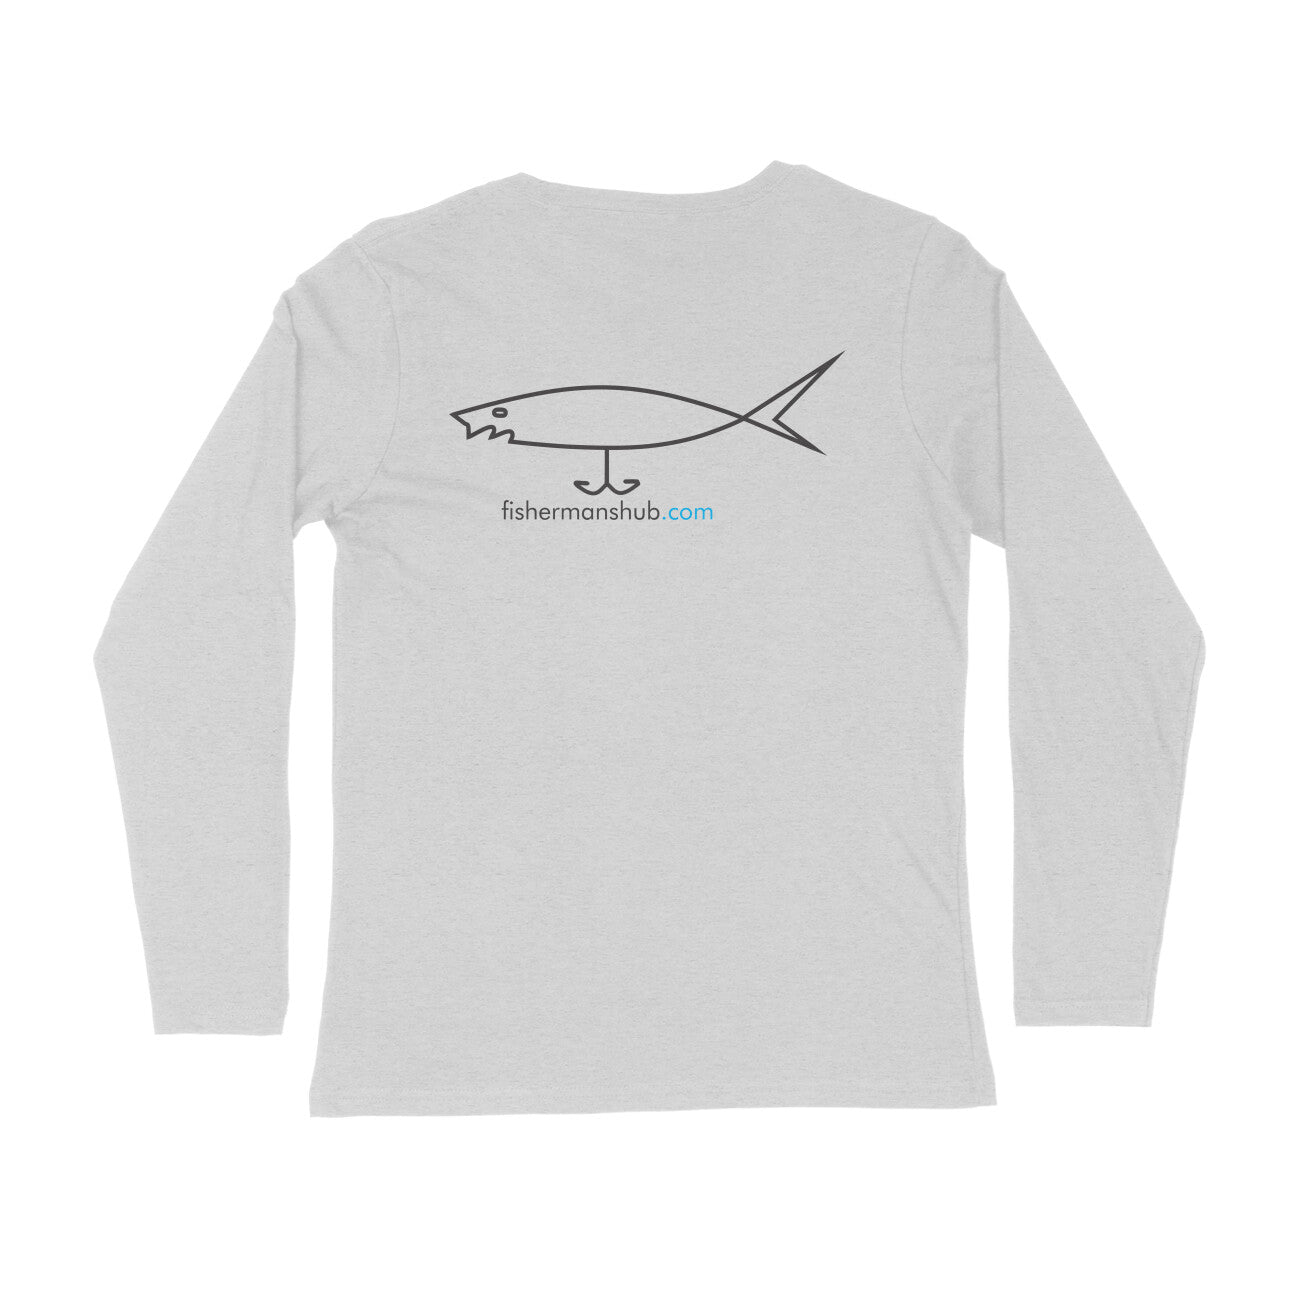 पुरुषों की एंग्लिंग टी-शर्ट | सामने - शांत रहें और मछली पकड़ने जाएं, पीछे -fishermanshub.com लोगो | राउंड गला | लंबी बाजूएं |